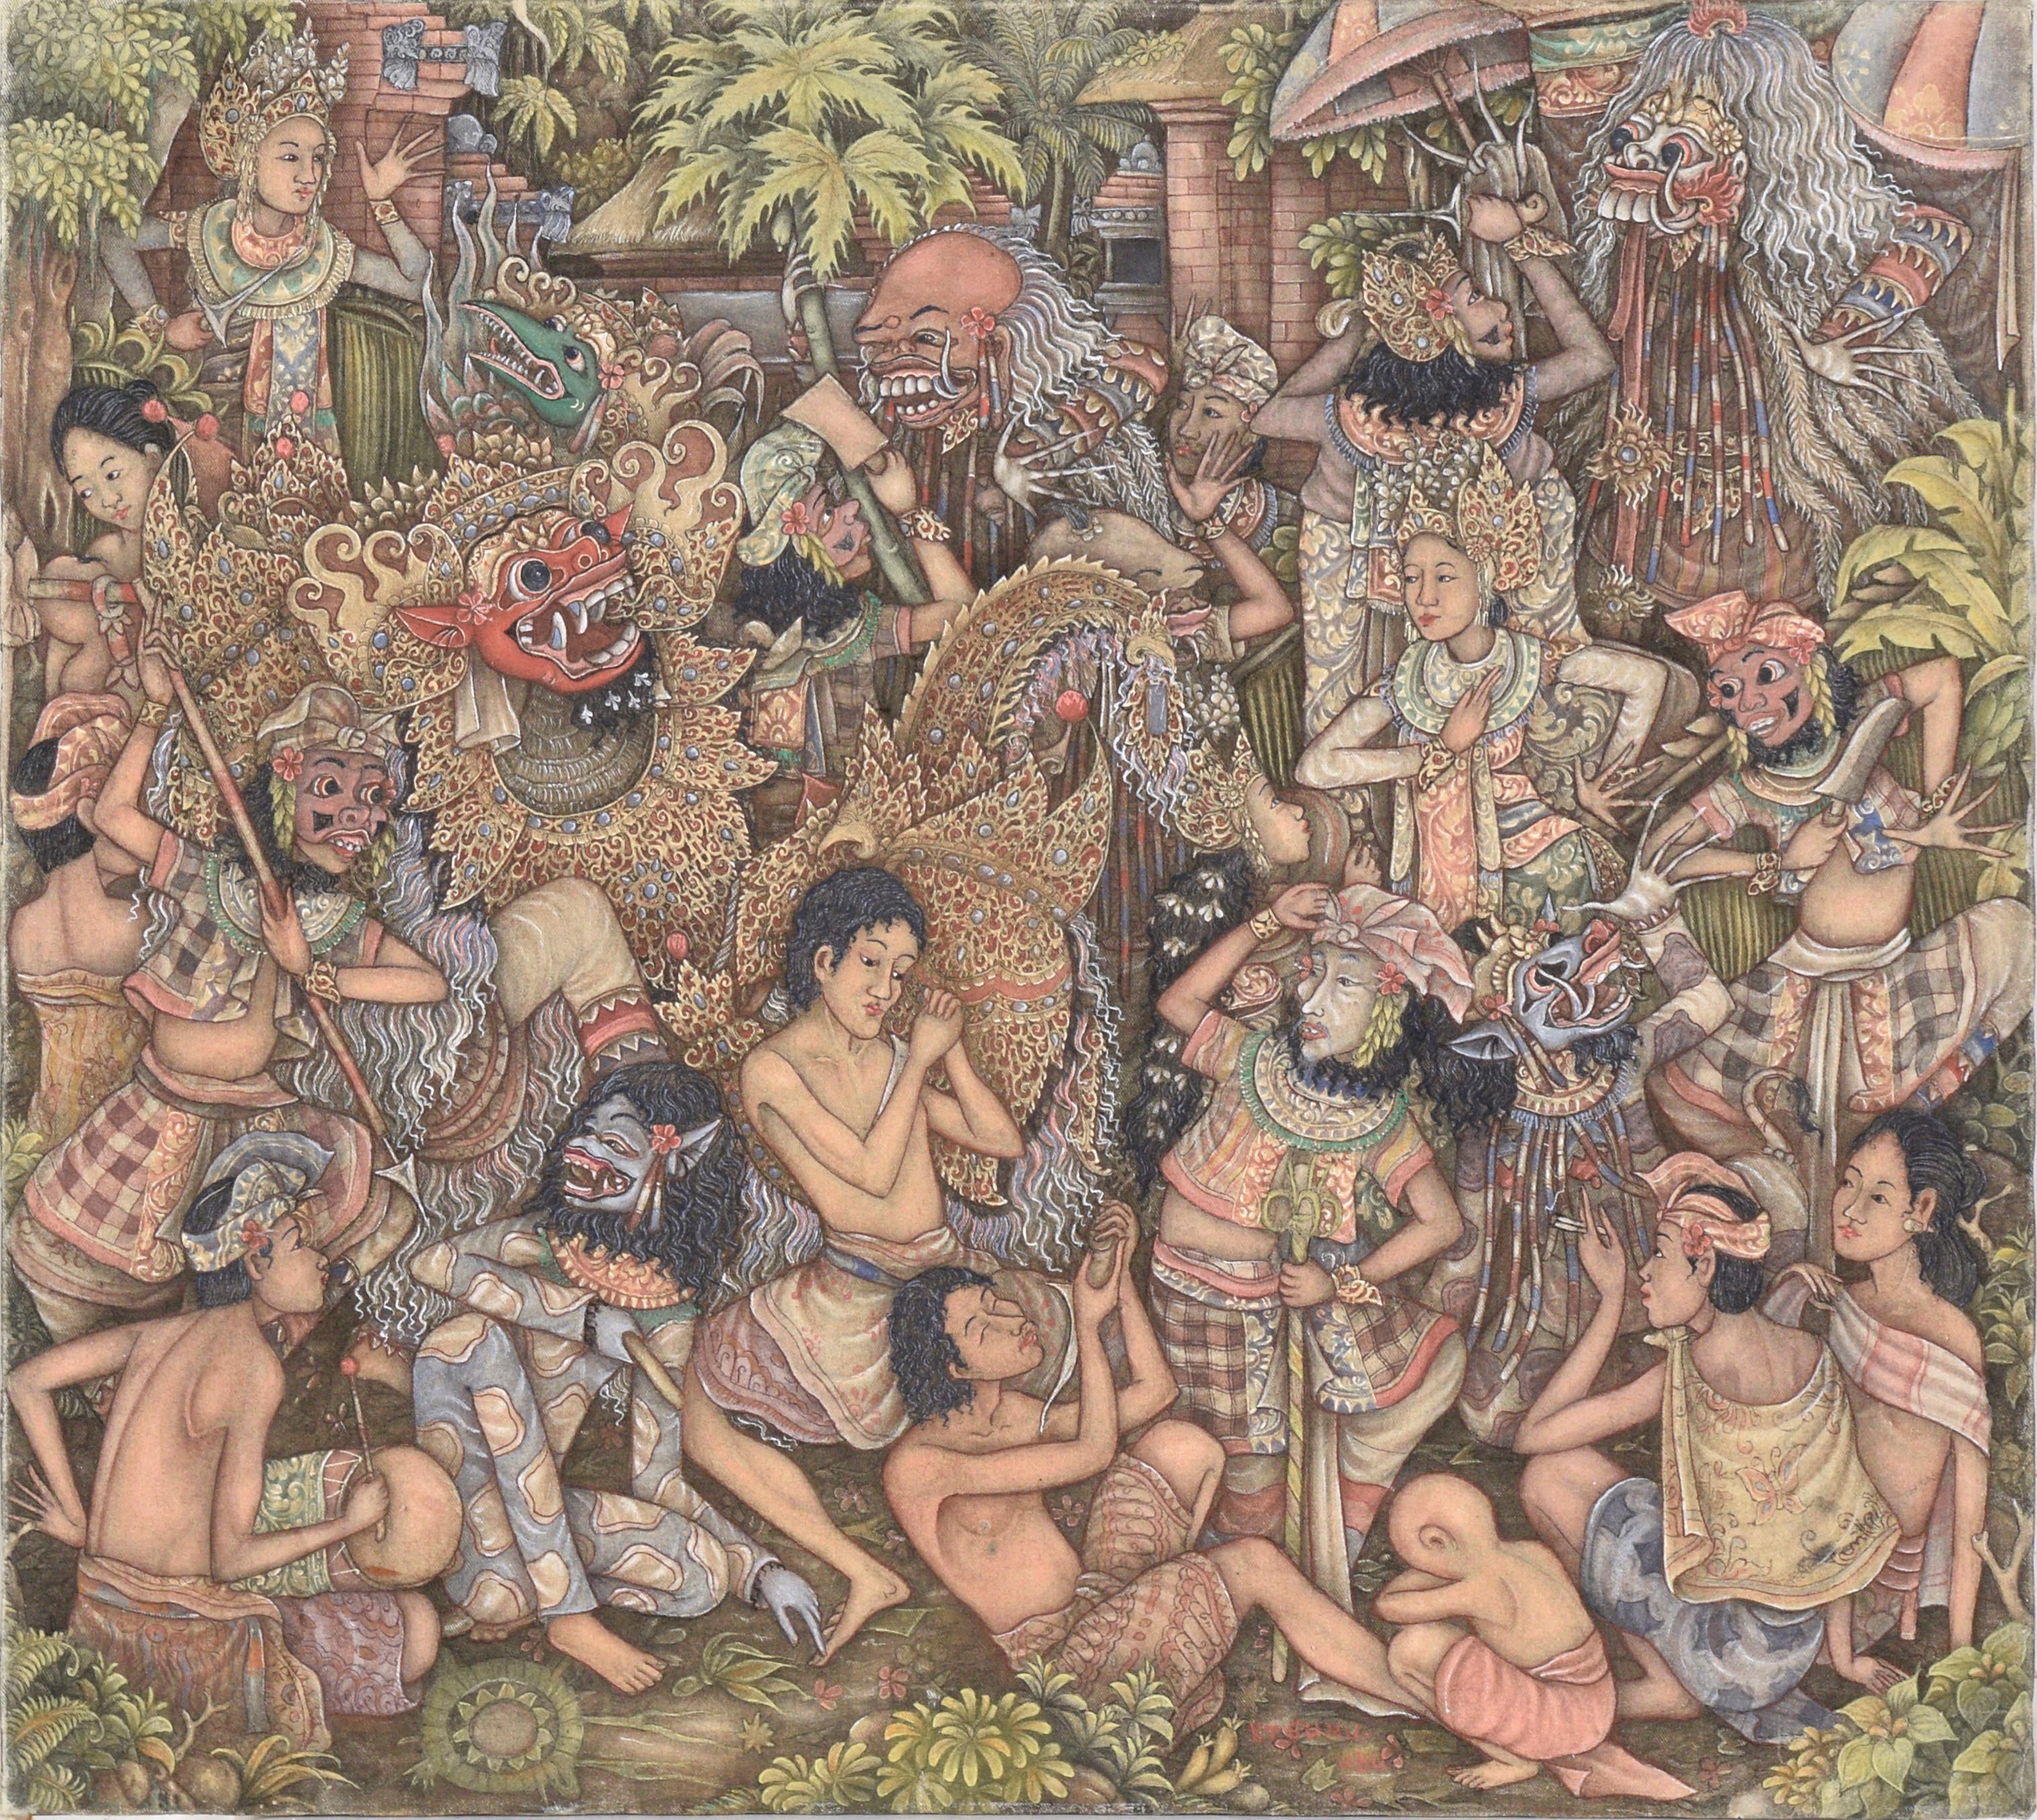 Sehr detaillierte Darstellung eines Barong-Maskentanzes auf Bali. Mehrere Personen, die kunstvolle Masken tragen, nehmen an einem Tanz oder Ritual teil. Zusätzlich zu den Masken und Kostümen tragen die Menschen weiß, rot und blau gestreifte